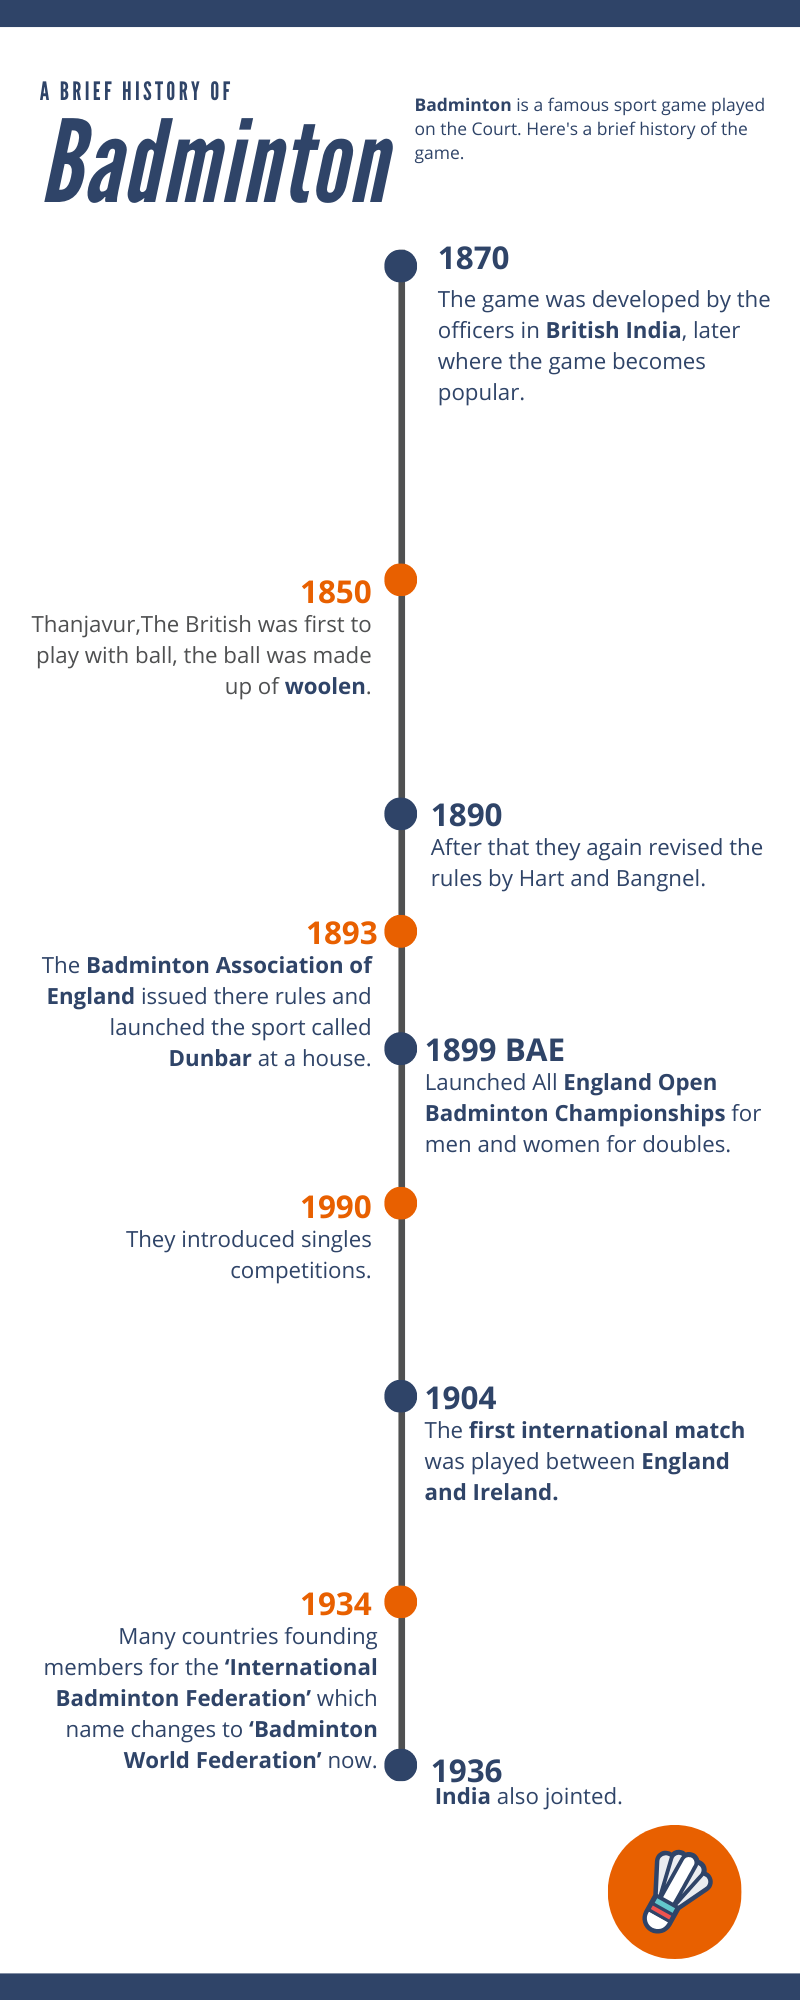 The Brief History of Badminton